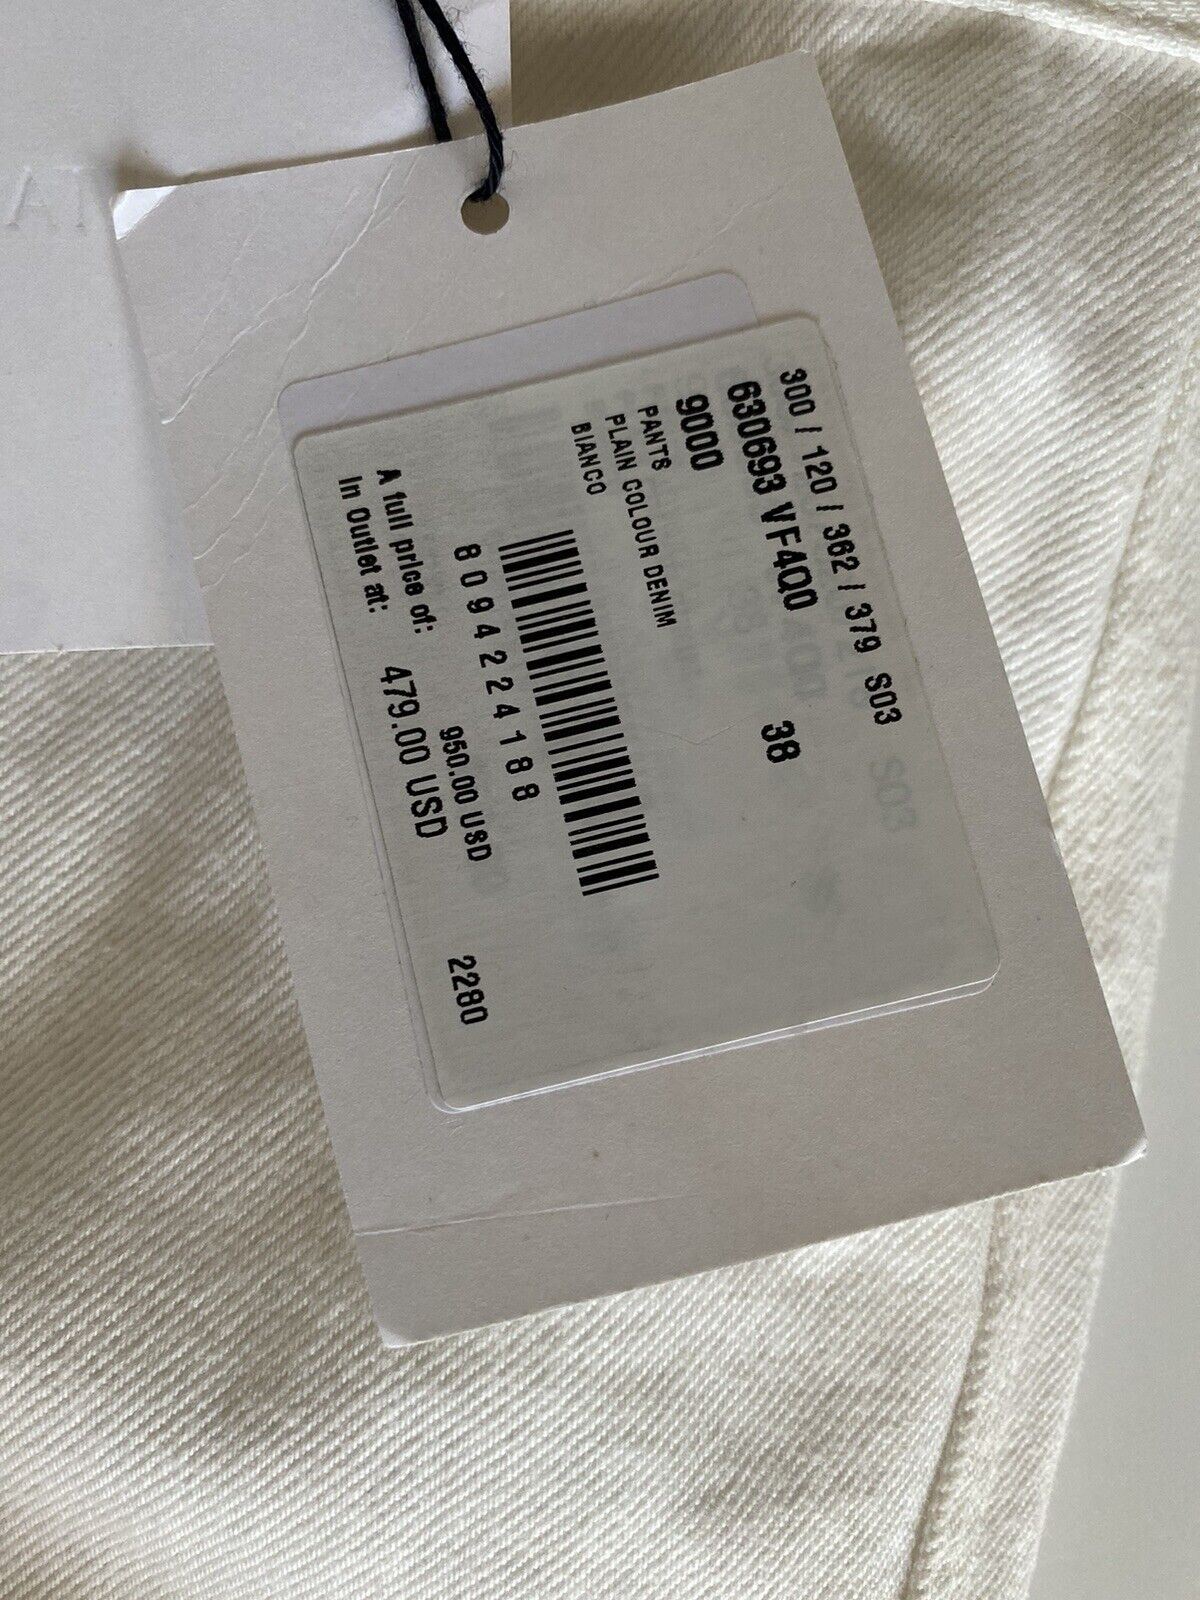 Neu mit Etikett: 950 $ Bottega Veneta High-Waist-Jeans Weiß 2 US (38 Euro) 630693 Italien